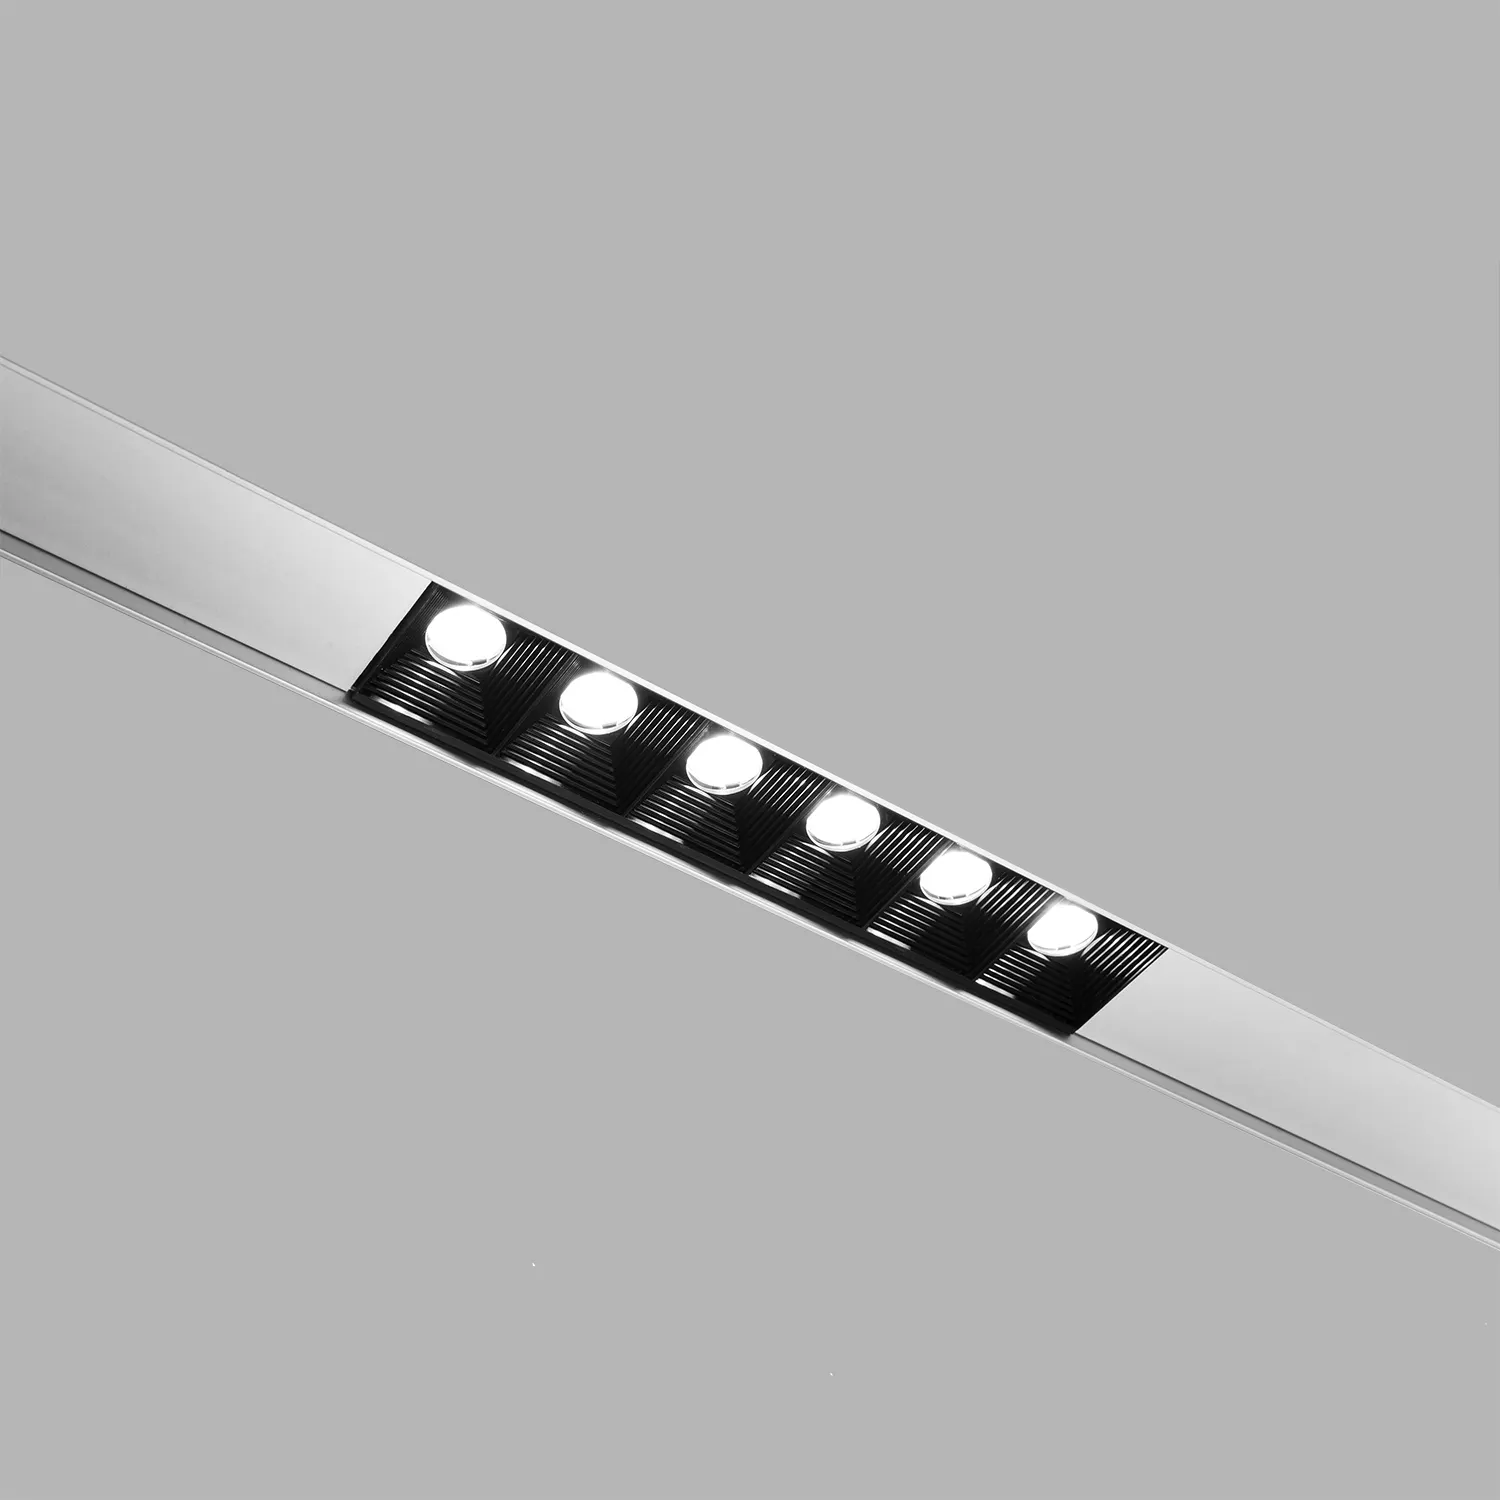 Модные индивидуализированные светодиодные линейные светильники lightform, встраиваемый Архитектурный Светильник для решетки радиатора